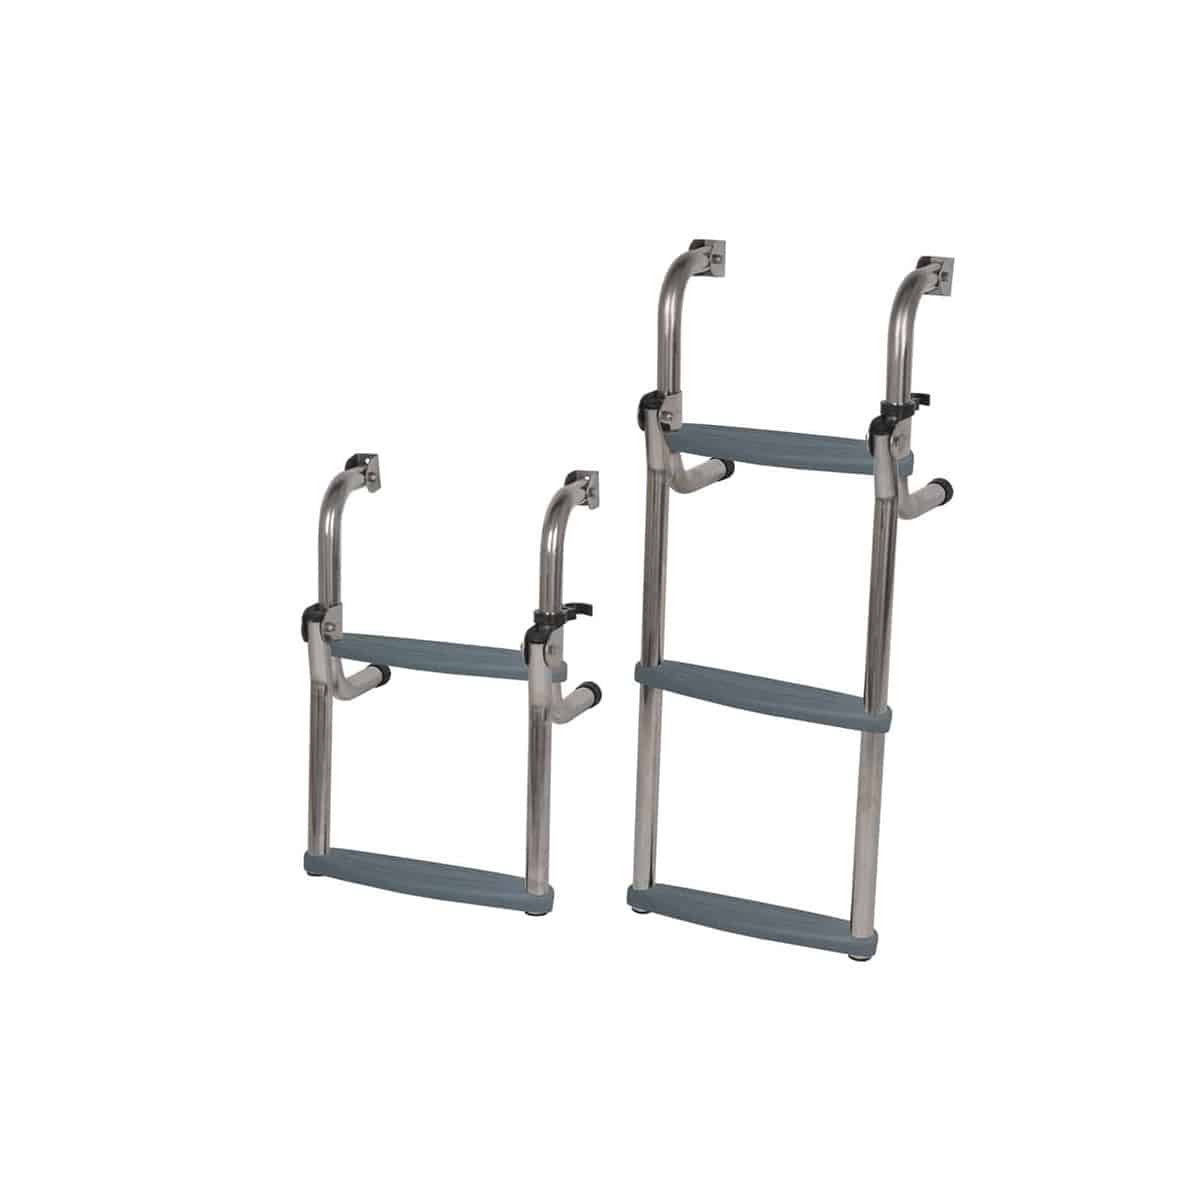 Short Base Ladder Stainless Steel folding